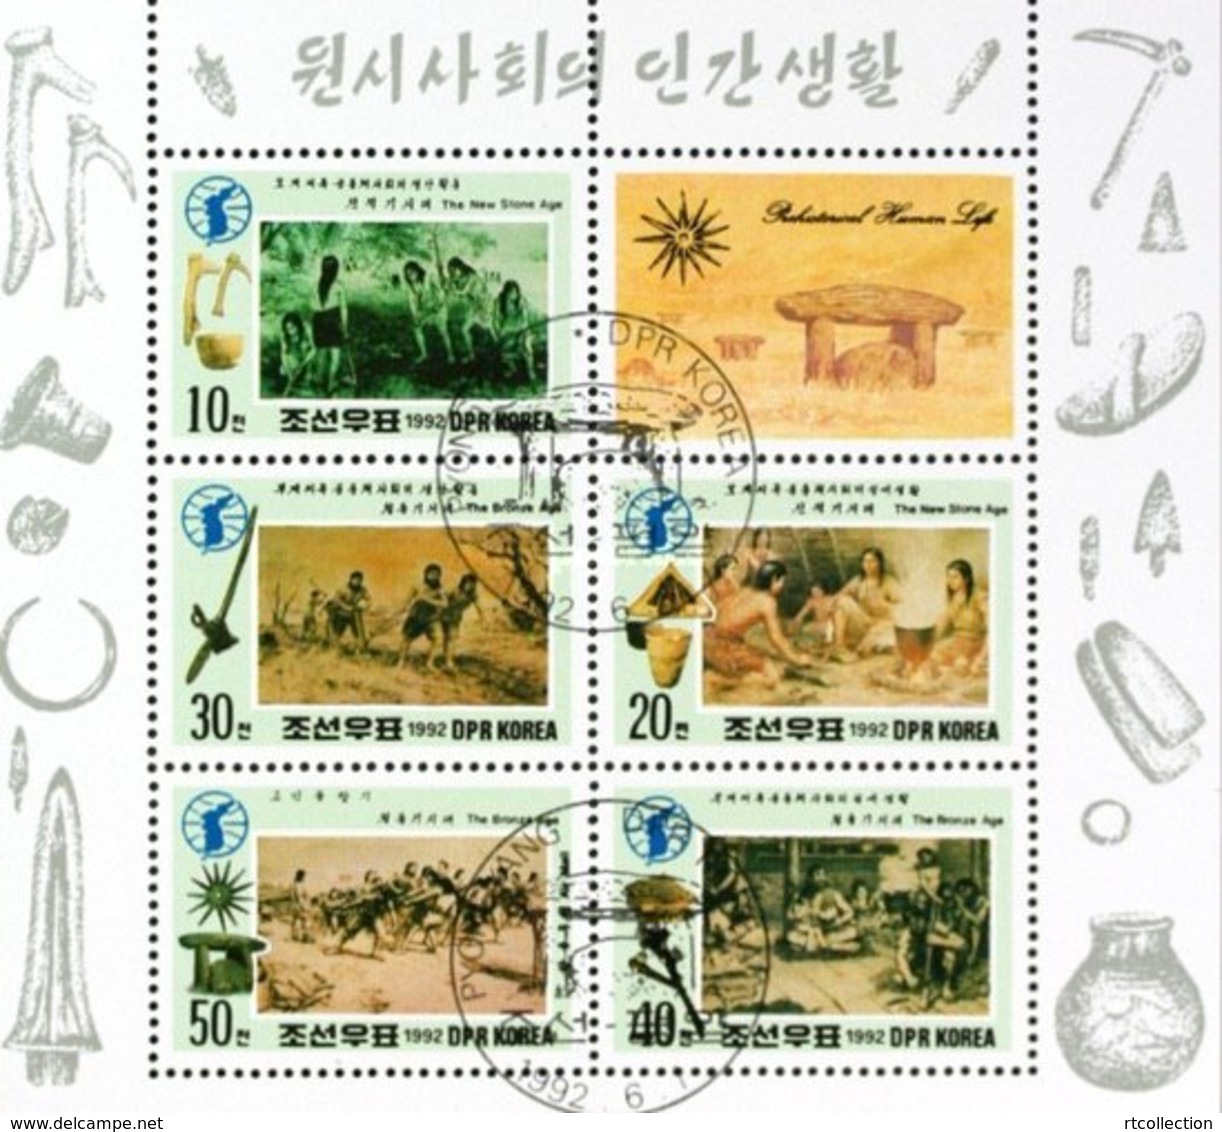 Korea 1992 Evolution Of Man Bronze Age Astrology Art Cultures M/S Stamps CTO Mi 3296-3300 SG N3149-53 - Astrology